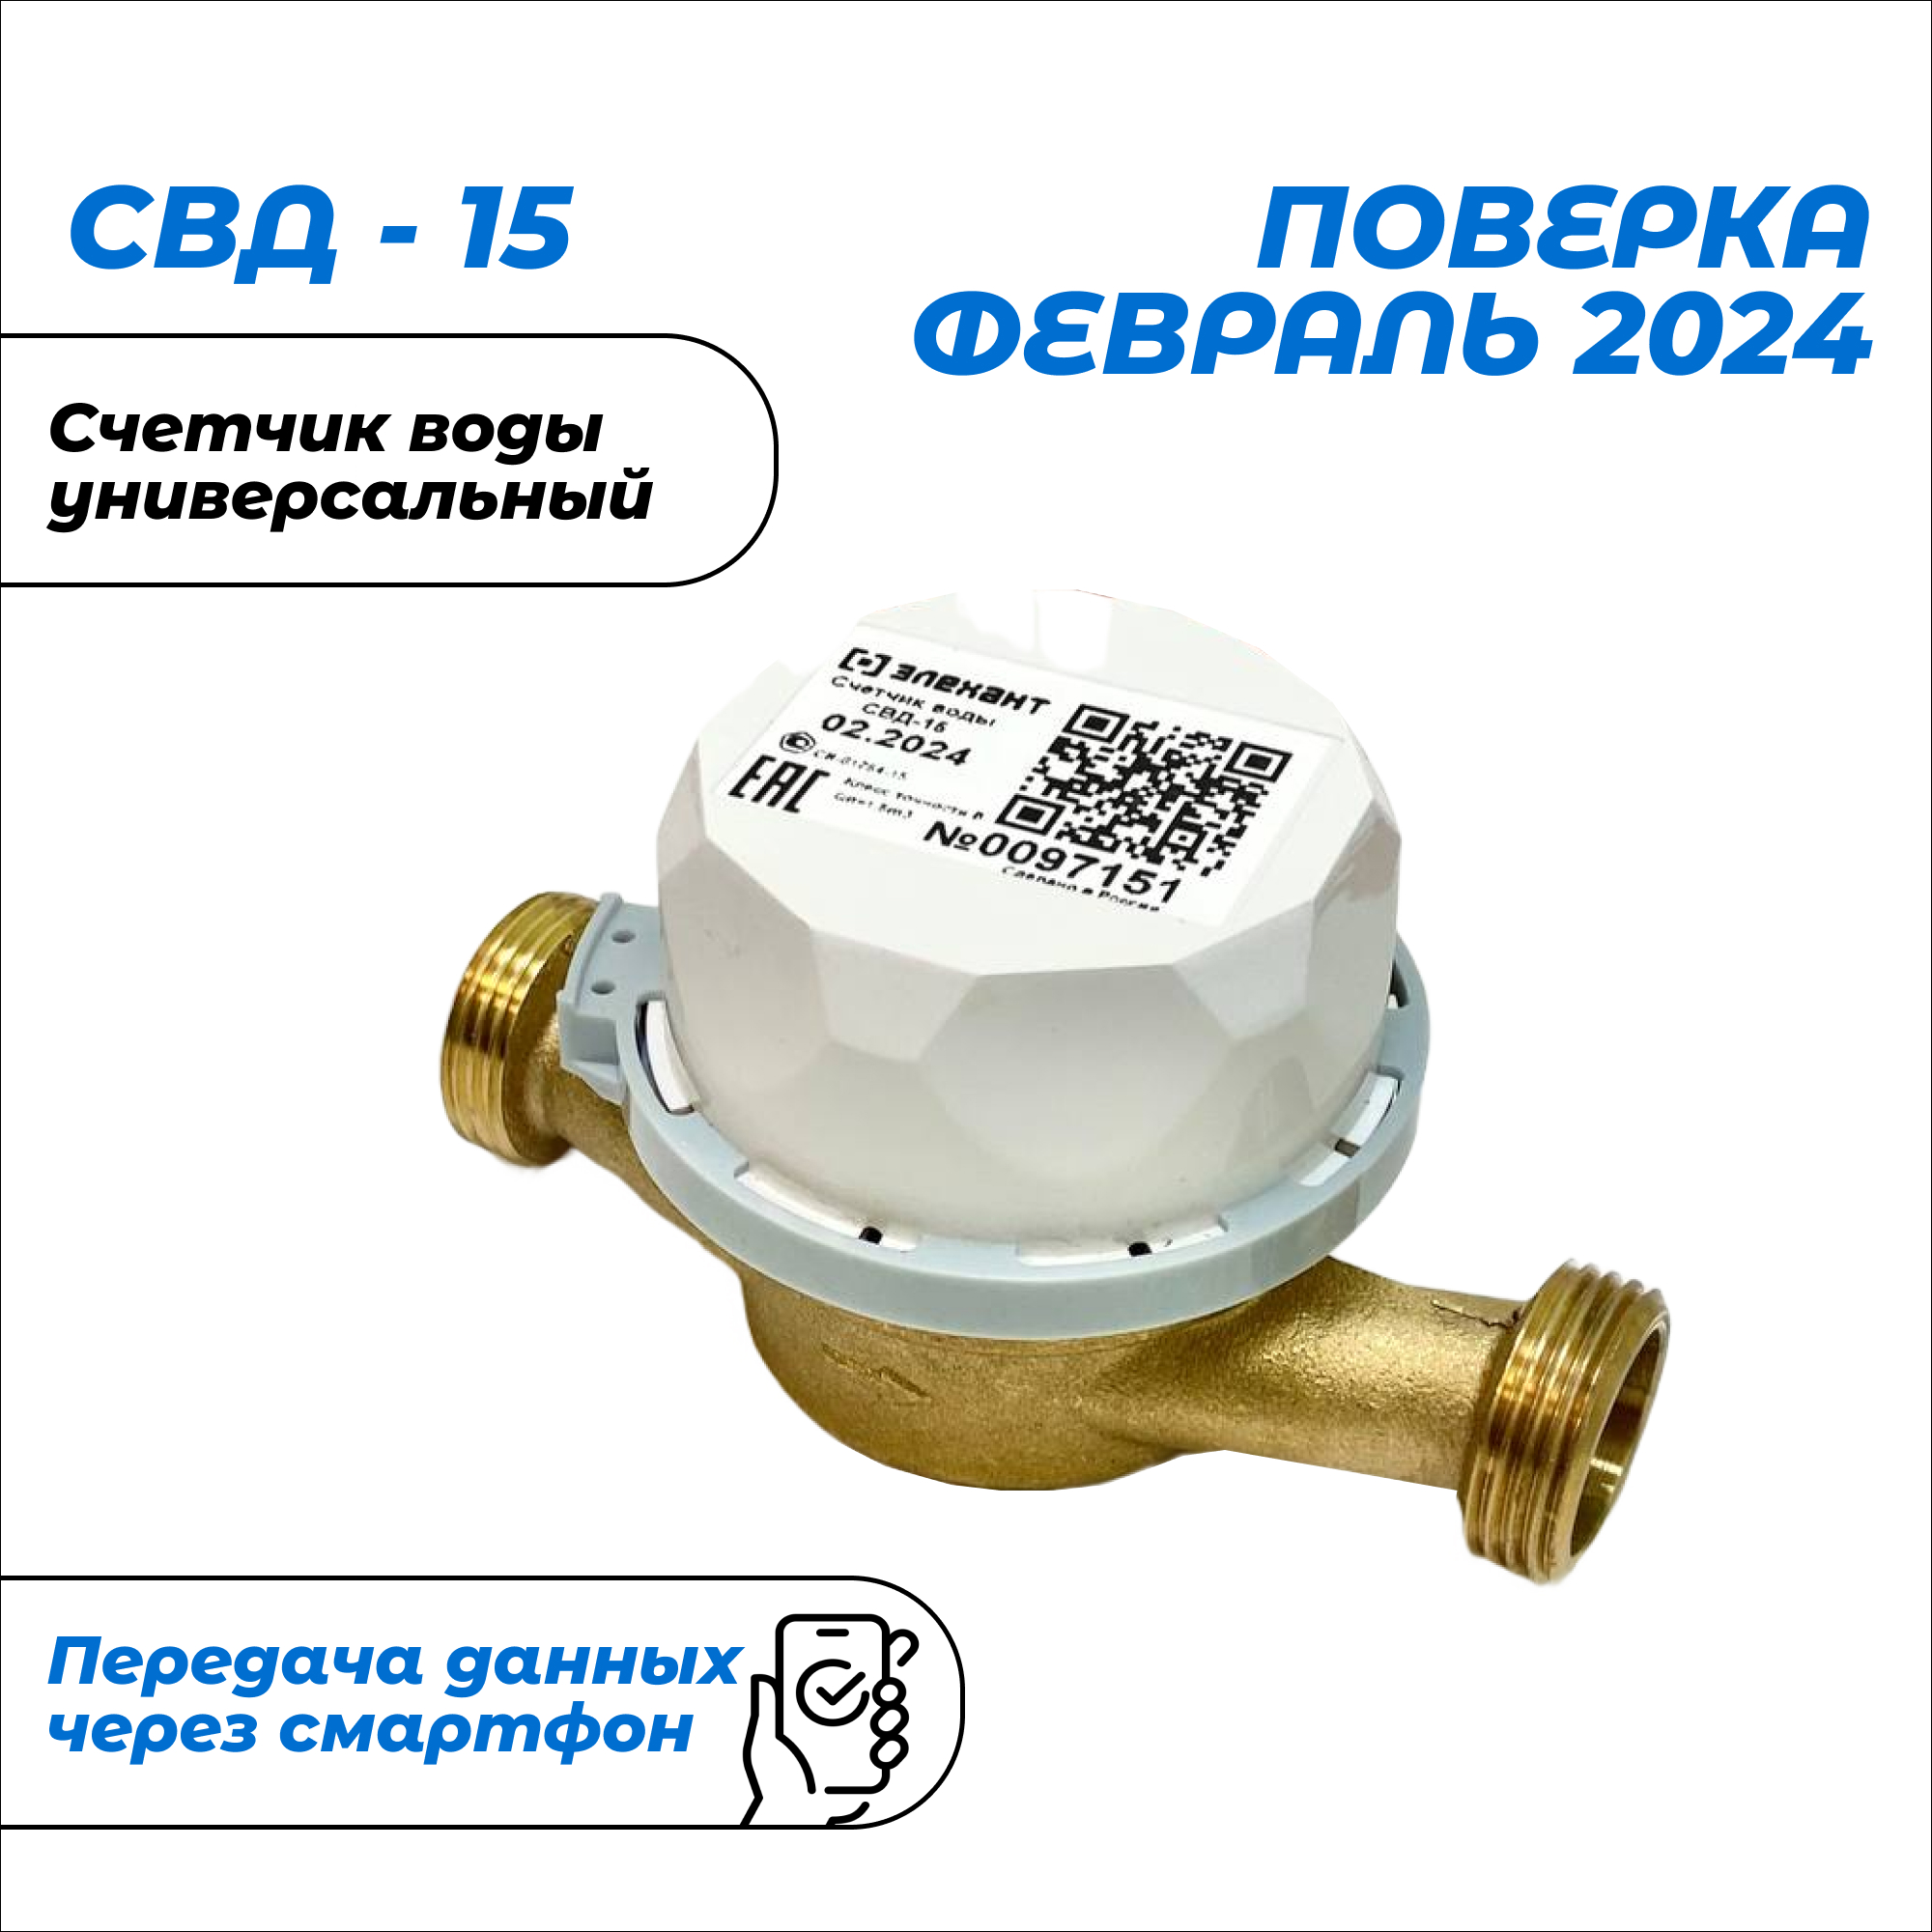 Счетчик воды Элехант СВД-15-110 универсальный